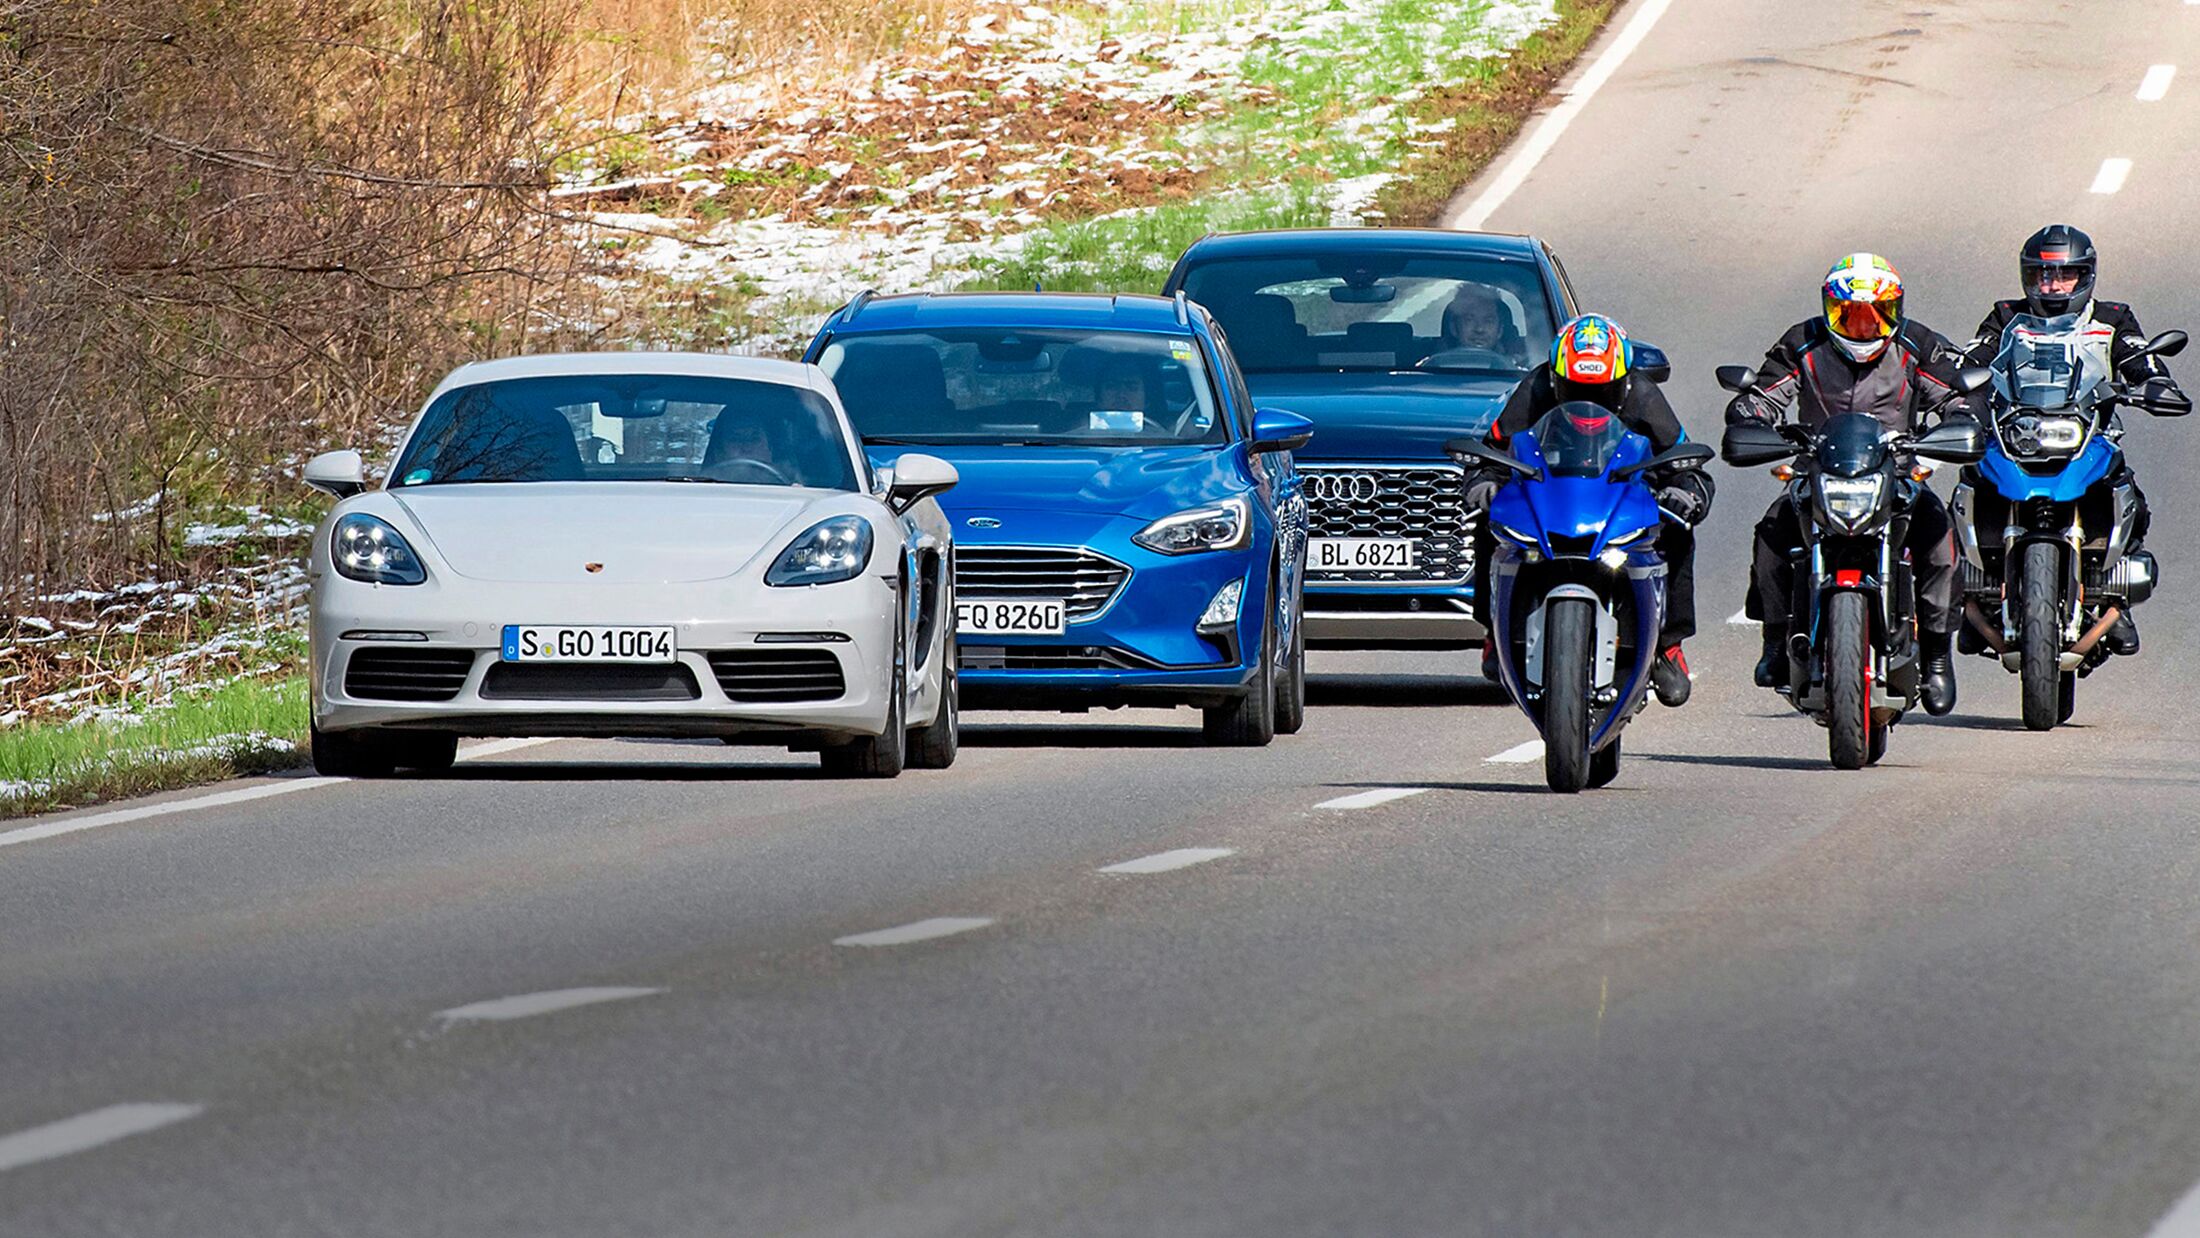 Benzinverbrauch Motorrad vs. Auto: Wer ist sparsamer unterwegs